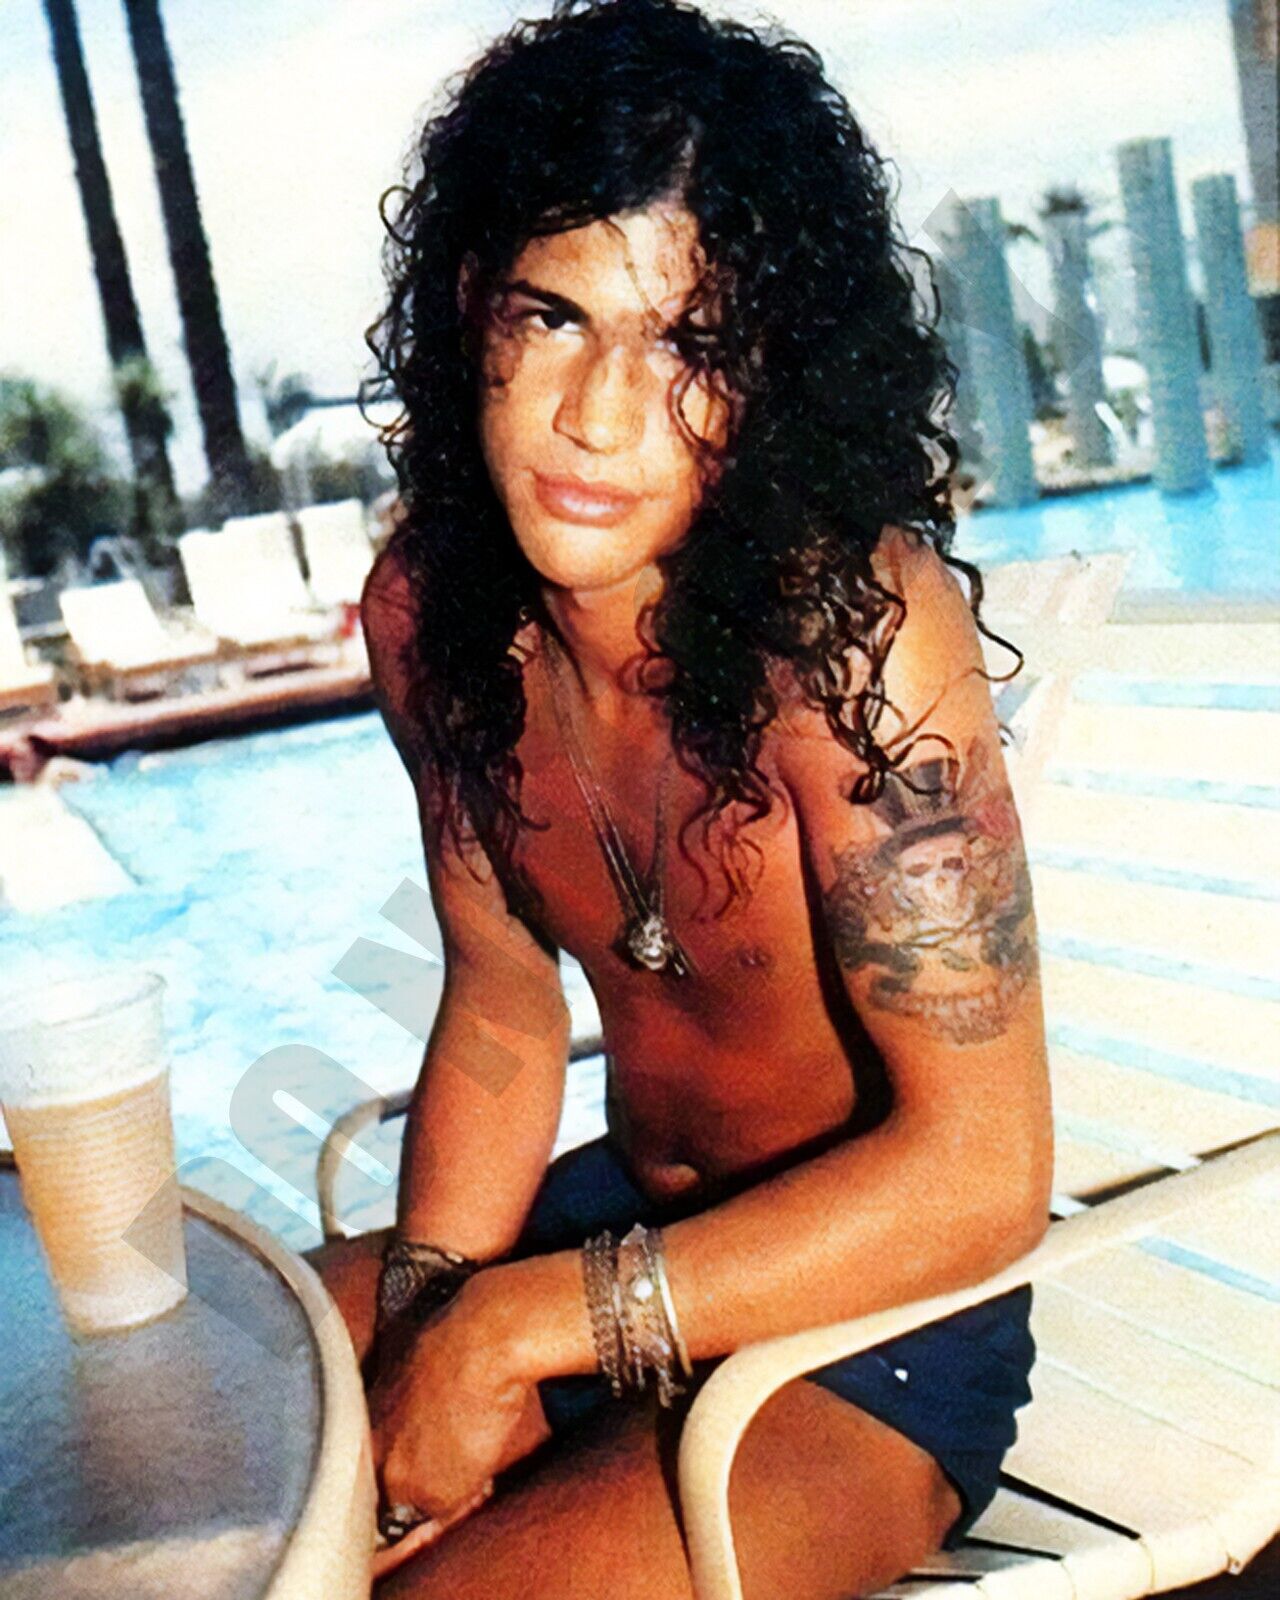 1980s Young Slash Guns N' Roses At Pool With No Shirt On  🎤 8x10 Photo 🎤